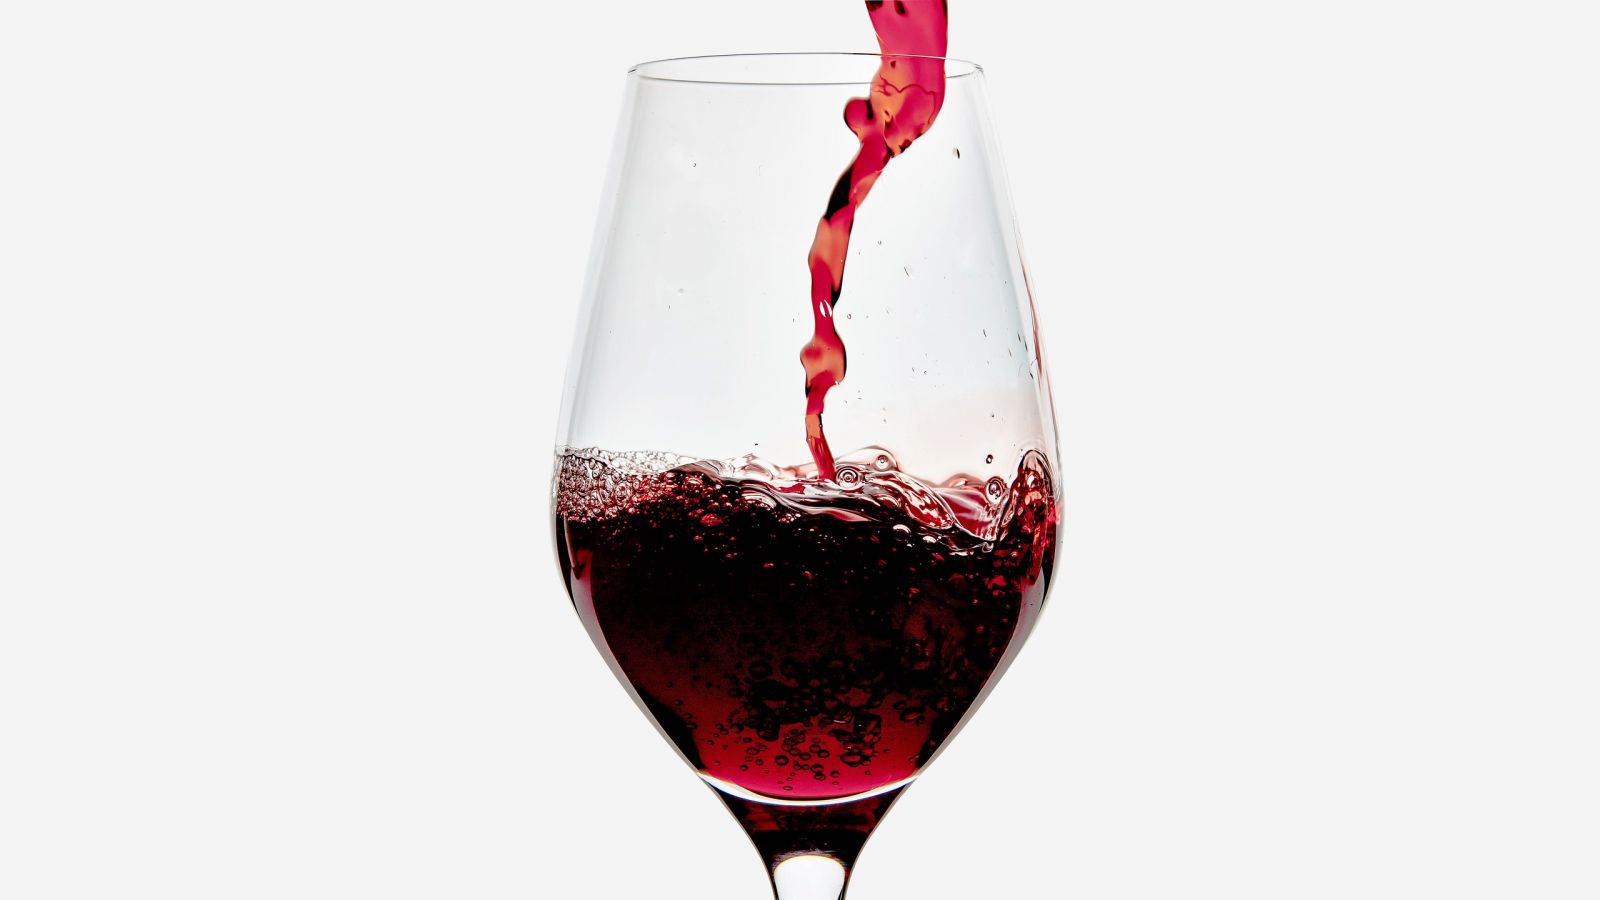 Sử dụng rượu vang đỏ là một trong những biện pháp bổ sung nội tiết tố nữ phổ biến được nhiều chị em thực hiện